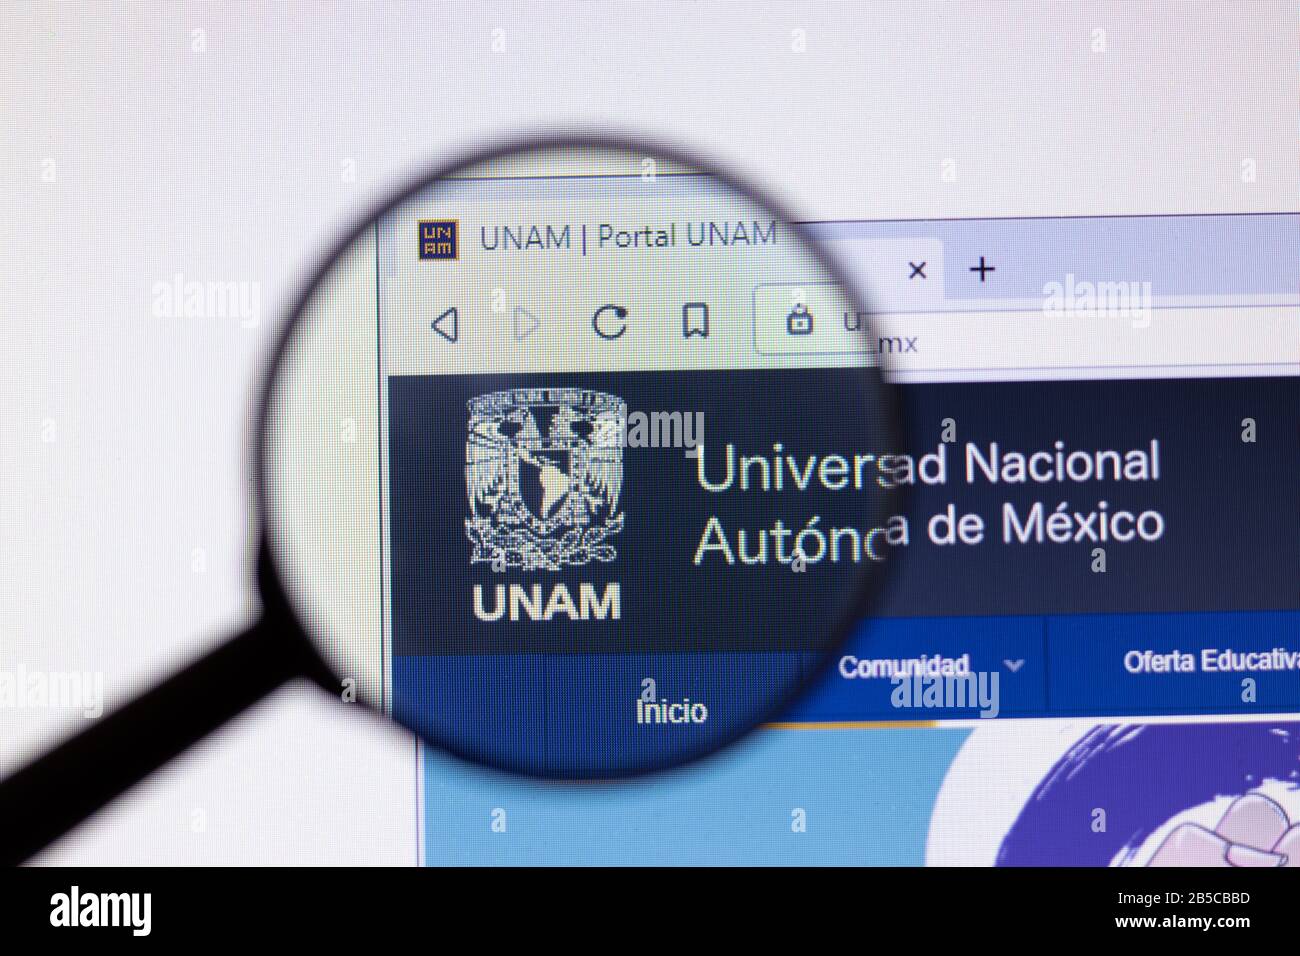 Los Angeles, California, USA - 7 March 2020: Universidad Nacional Autonoma de Mexico UNAM website homepage logo visible on display close-up Stock Photo